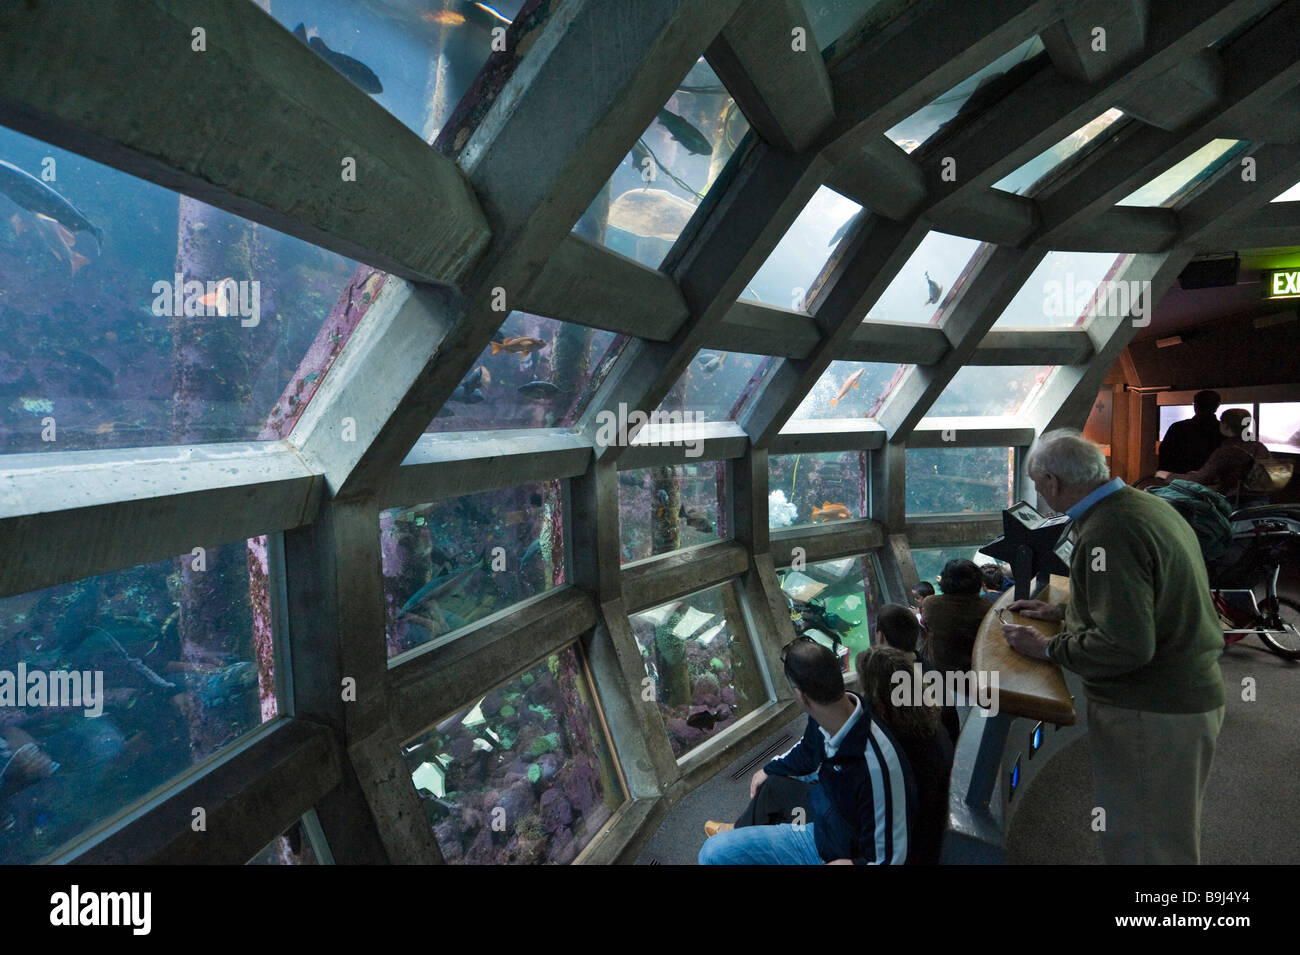 Le dôme sous-marine, l'Aquarium de Seattle, Seattle Washington, USA Banque D'Images